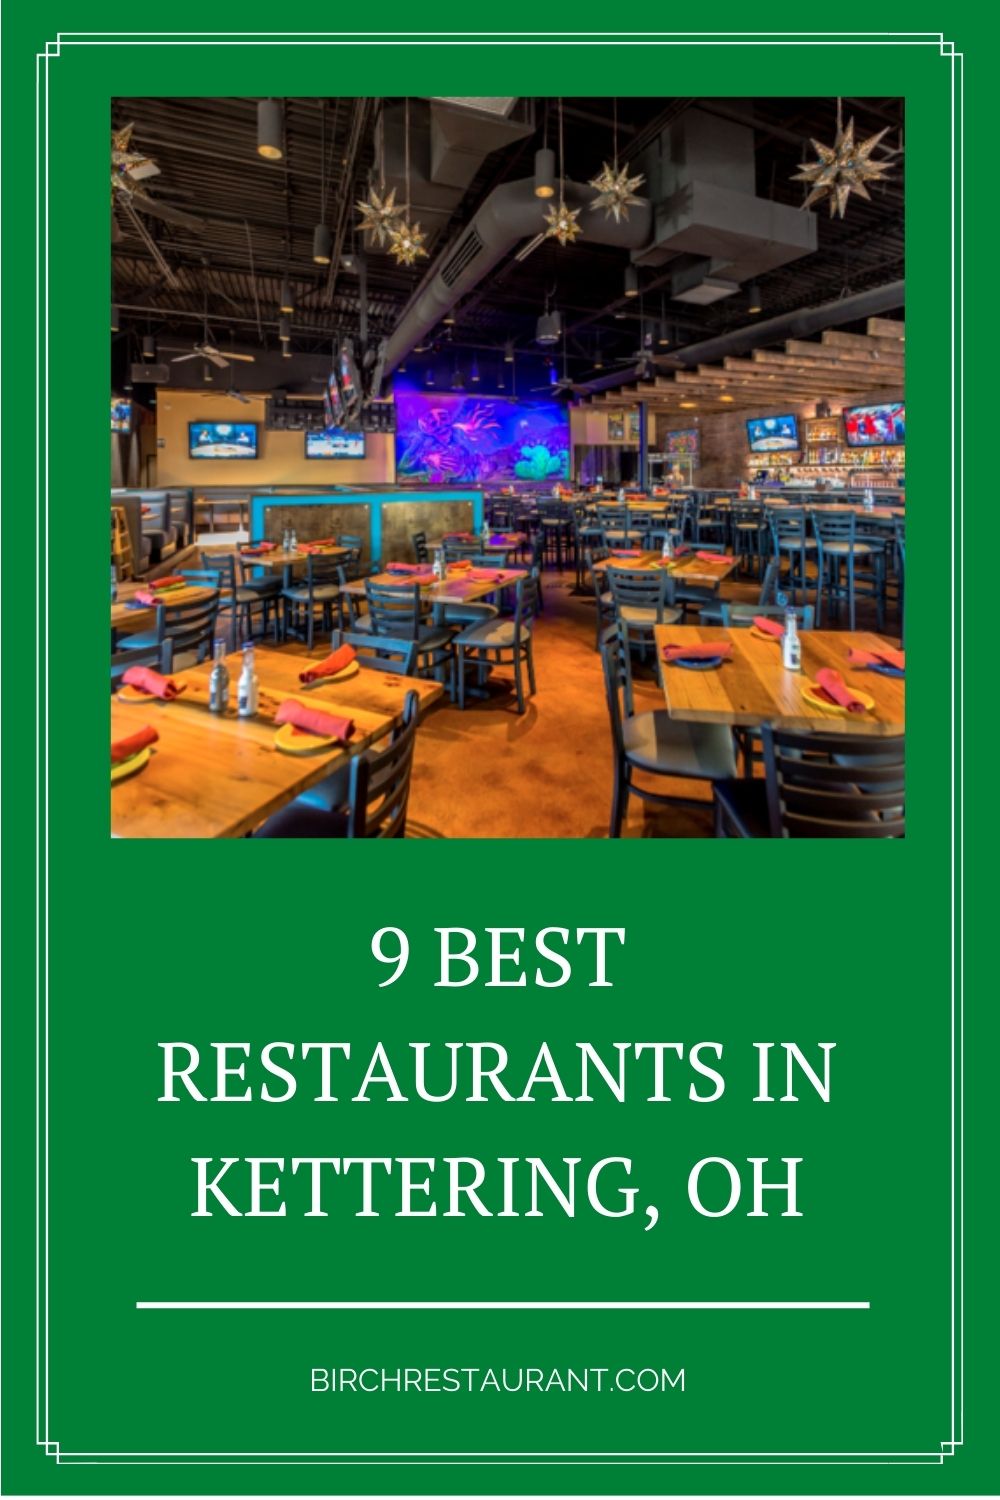 Best Restaurants in Kettering